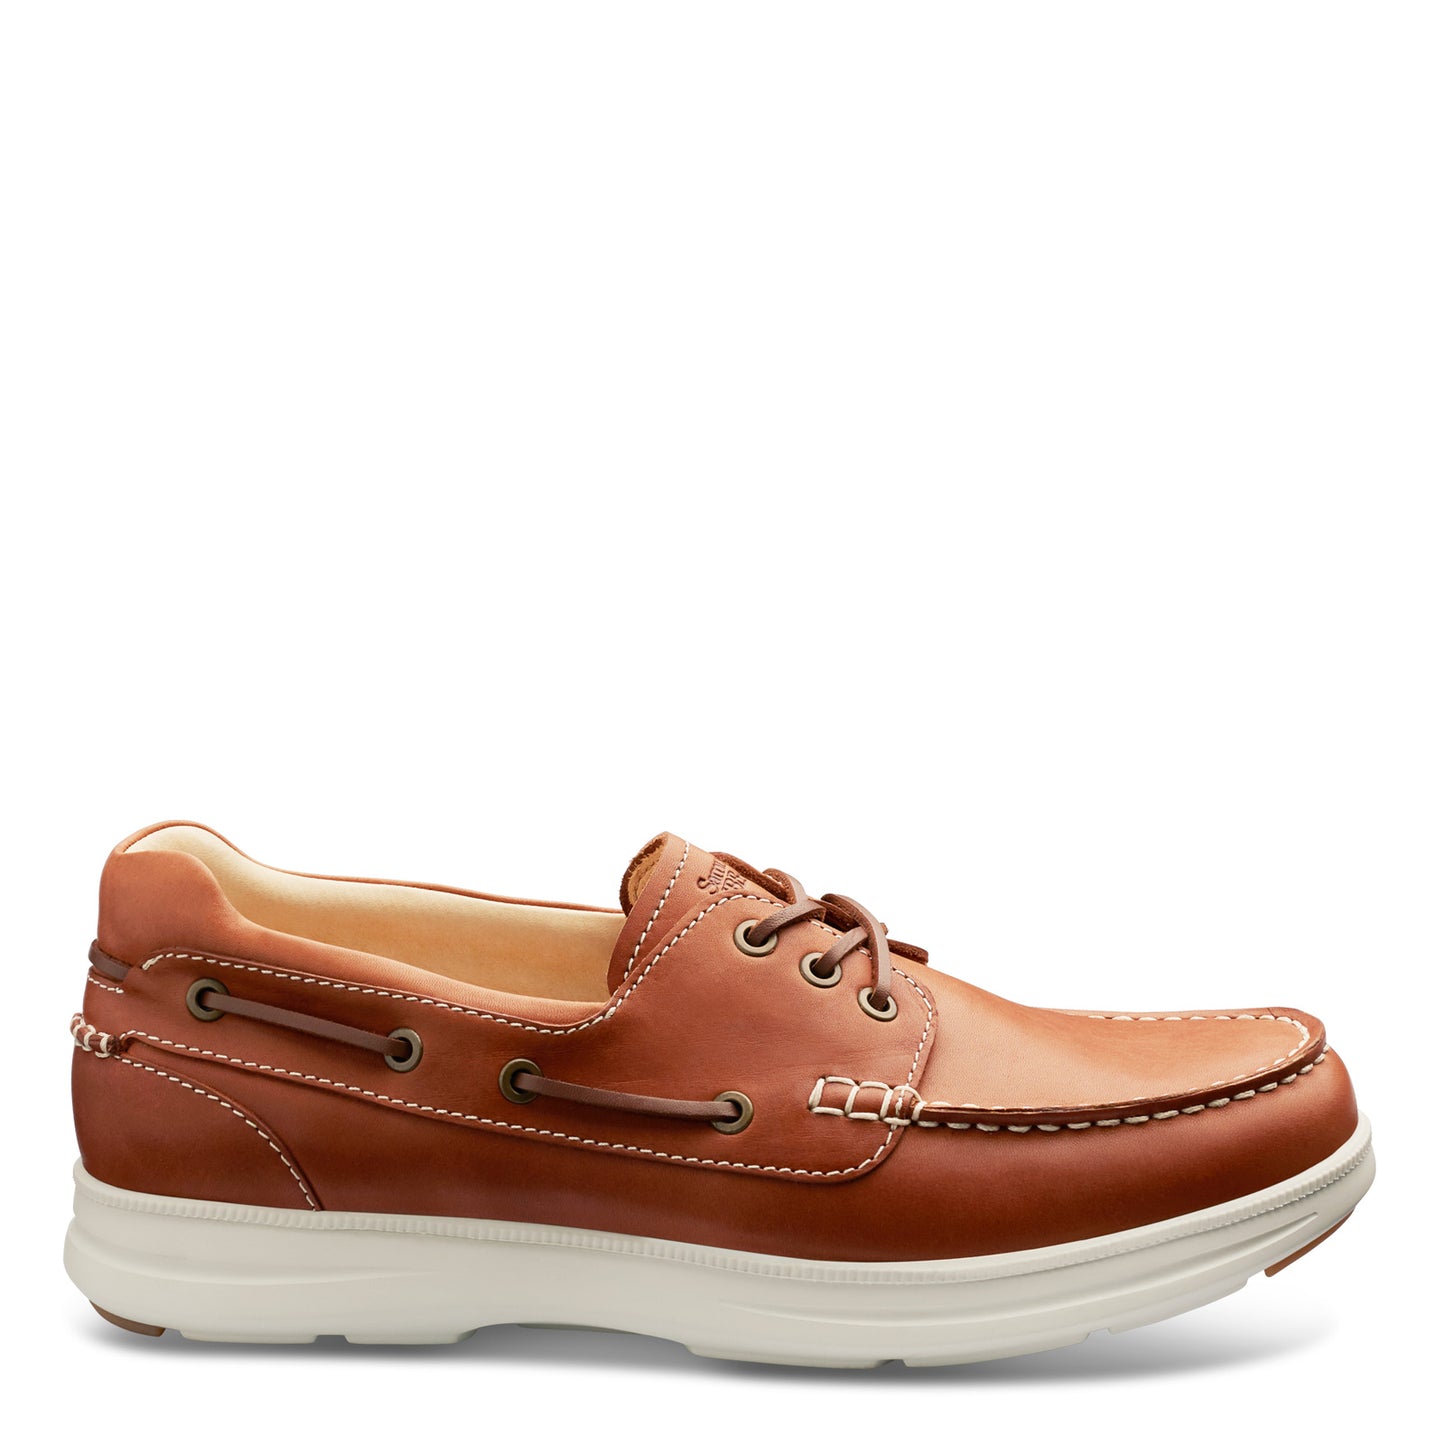 Peltz Shoes  Men's Samuel Hubbard New Endeavor Boat Shoe TAN M1500-105